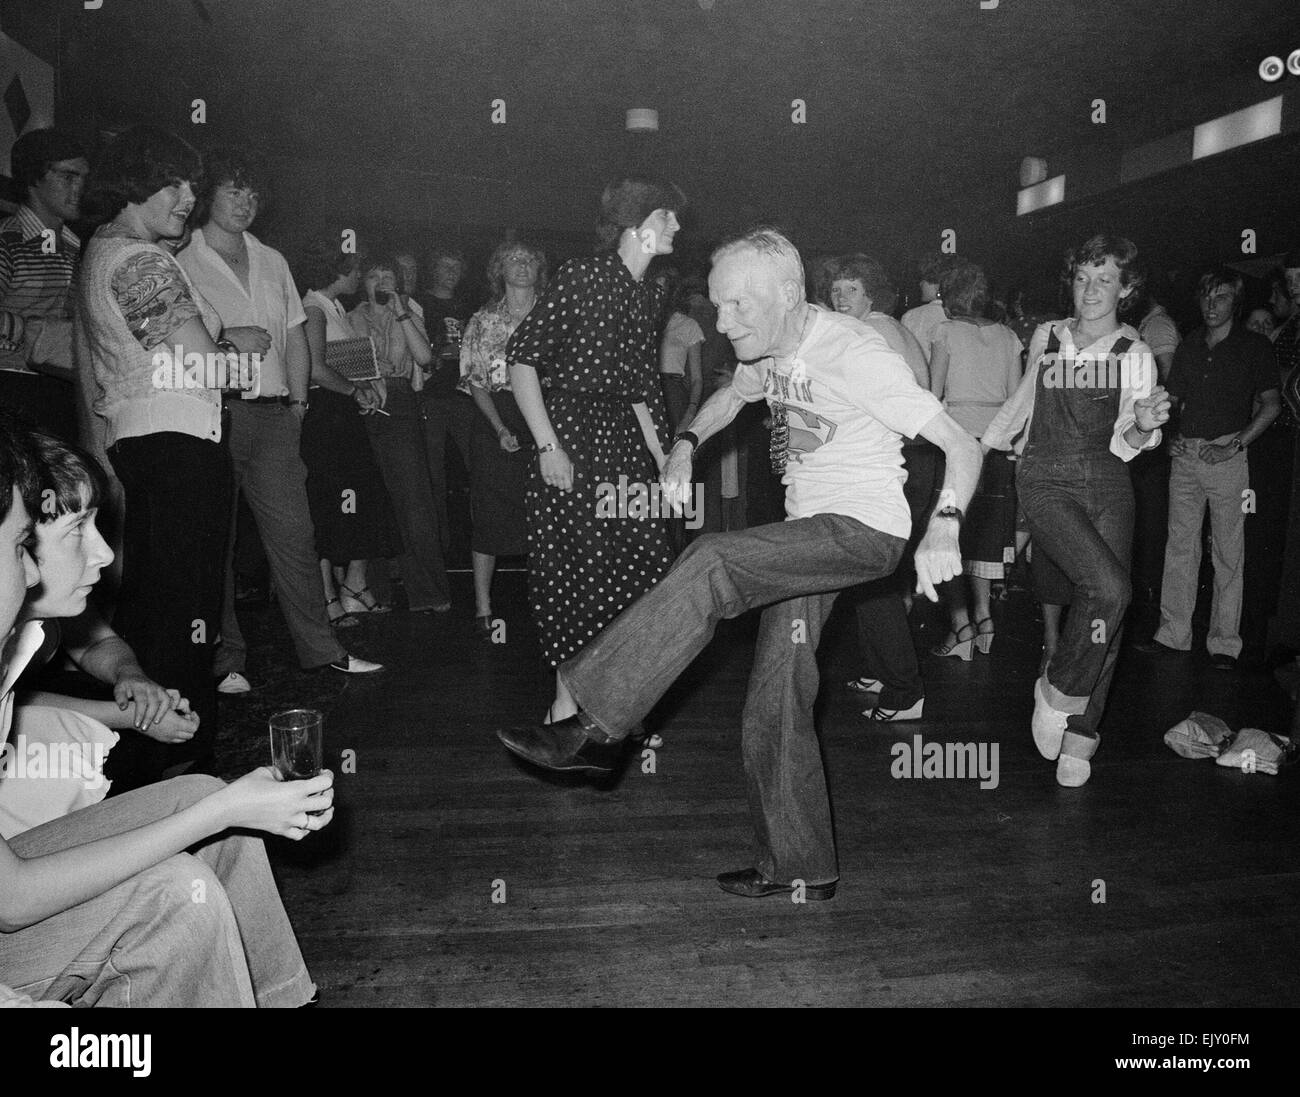 Tu abuelo bailando Edwon Rolestone muestra algunos de sus movimientos. El 6 de mayo de 1979. Foto de stock